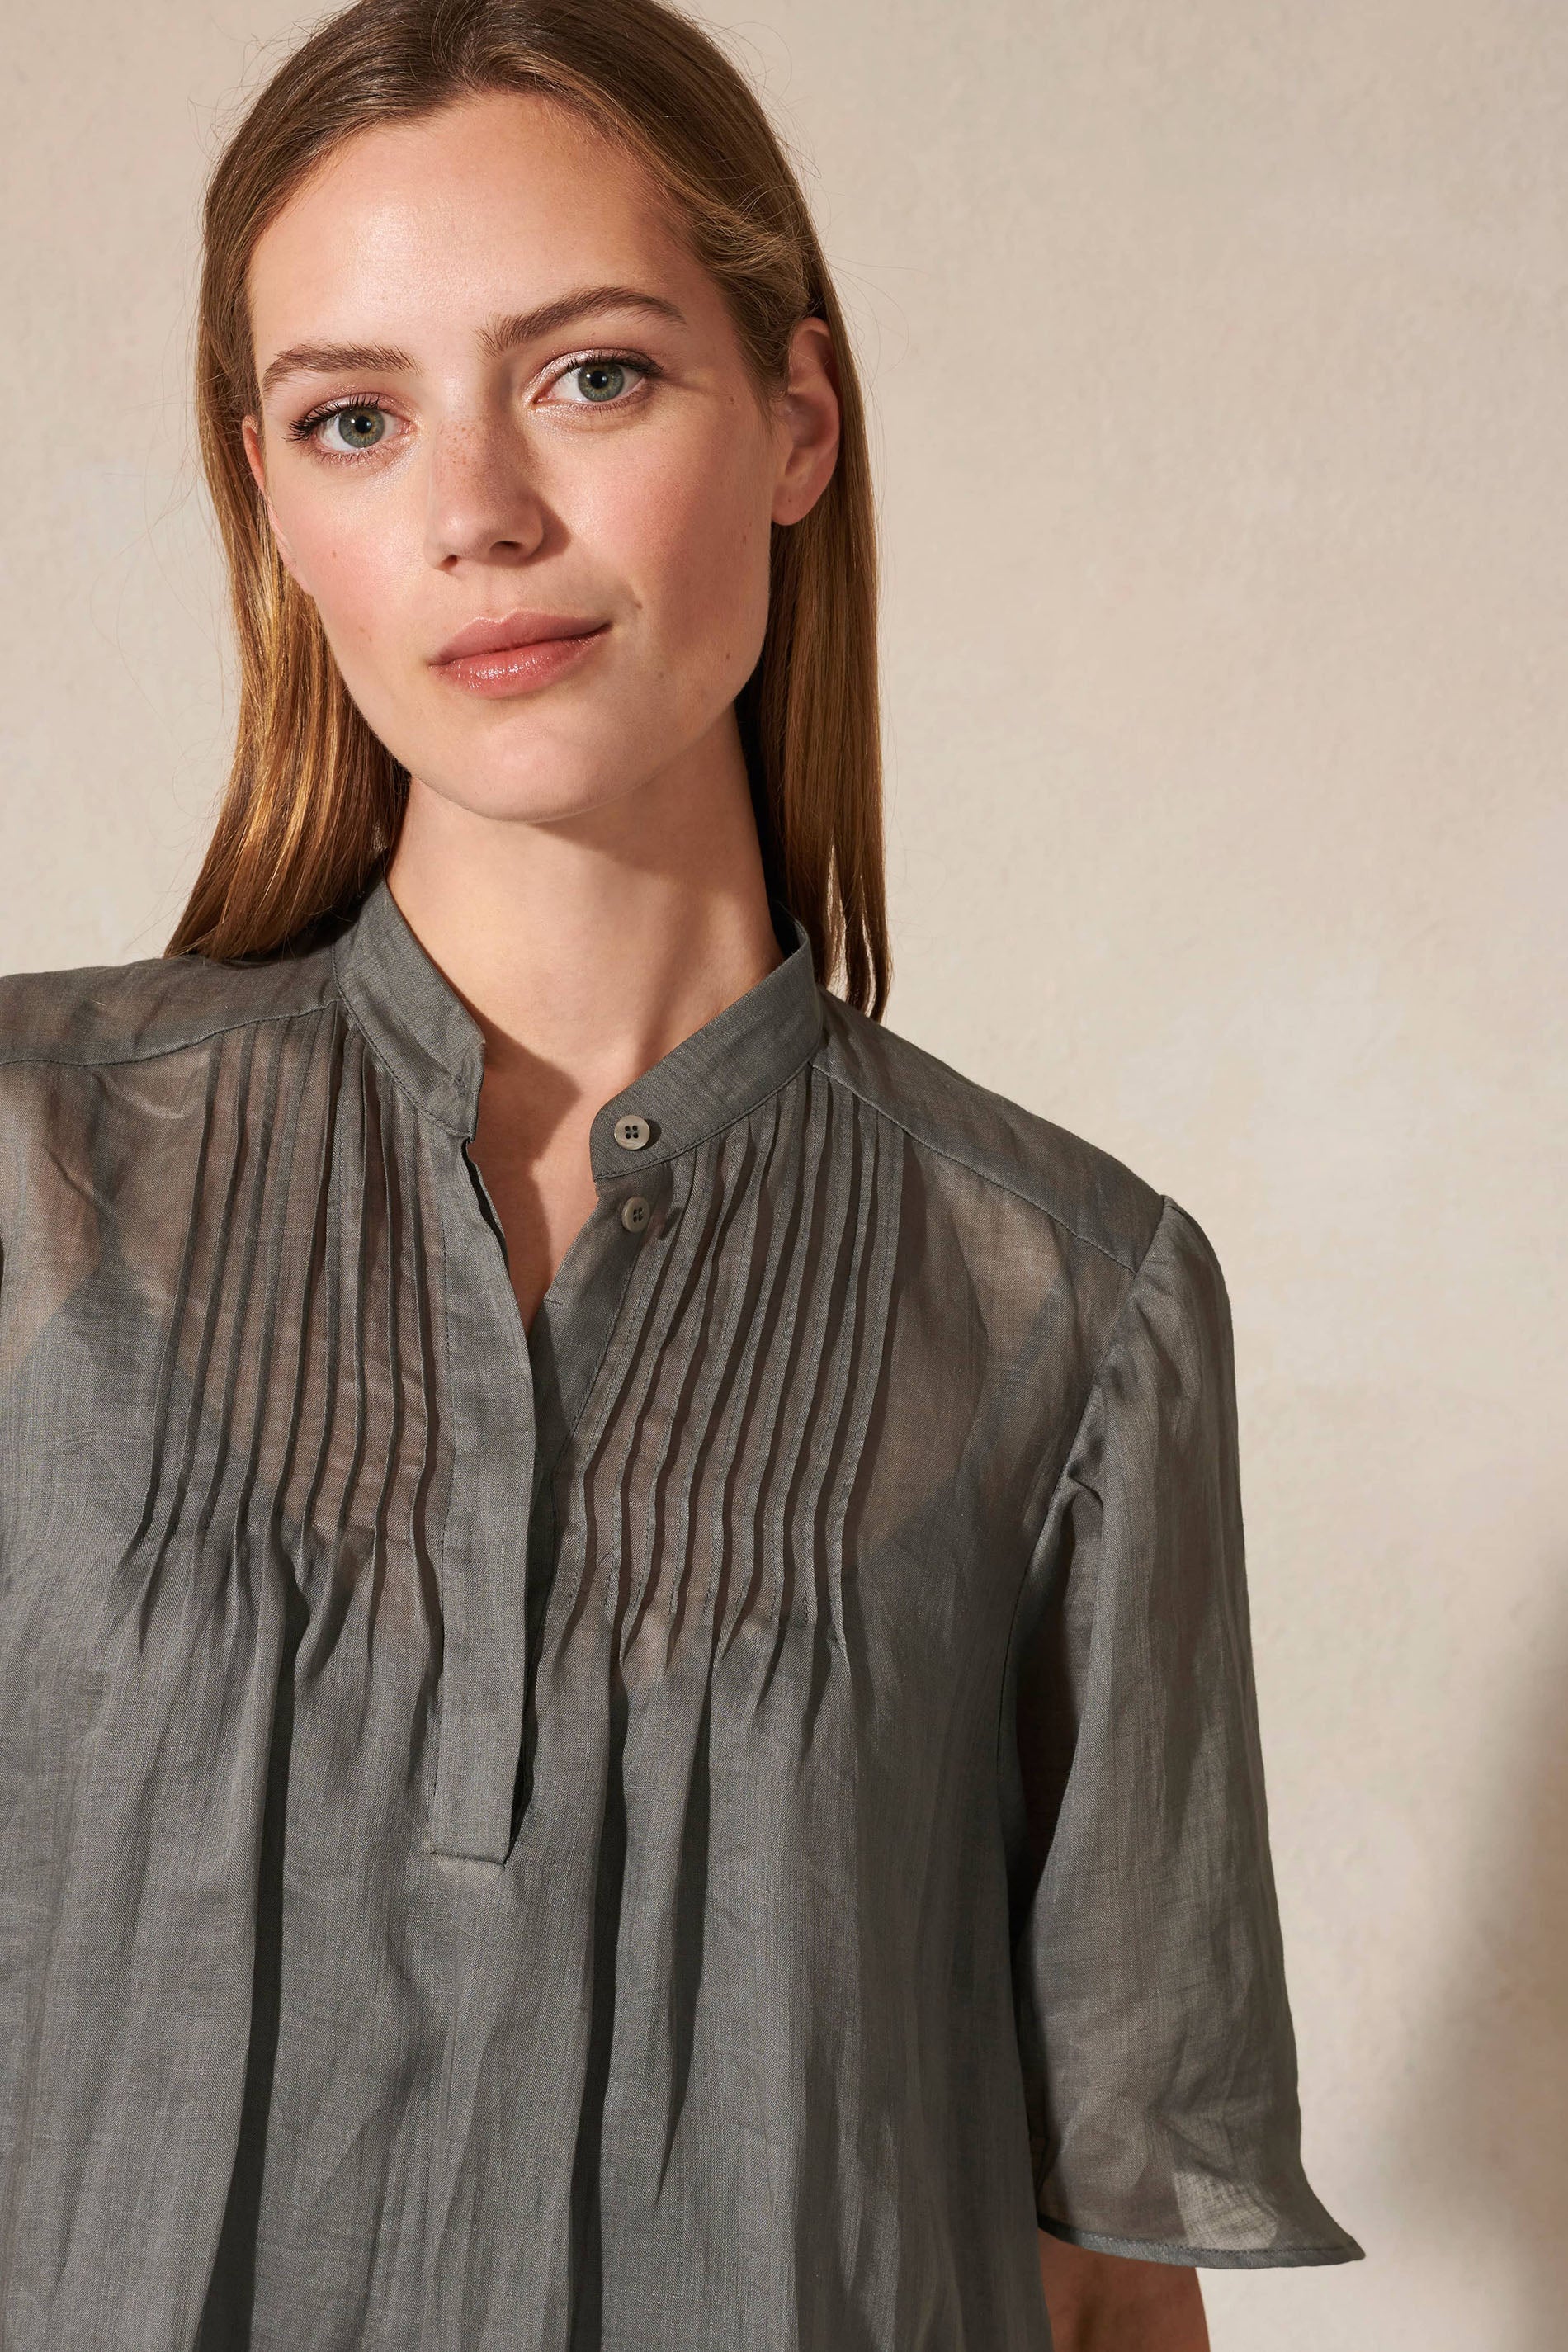 LUISA-CERANO-OUTLET-SALE-Ramie-Kleid mit Biesendetails-ARCHIVIST